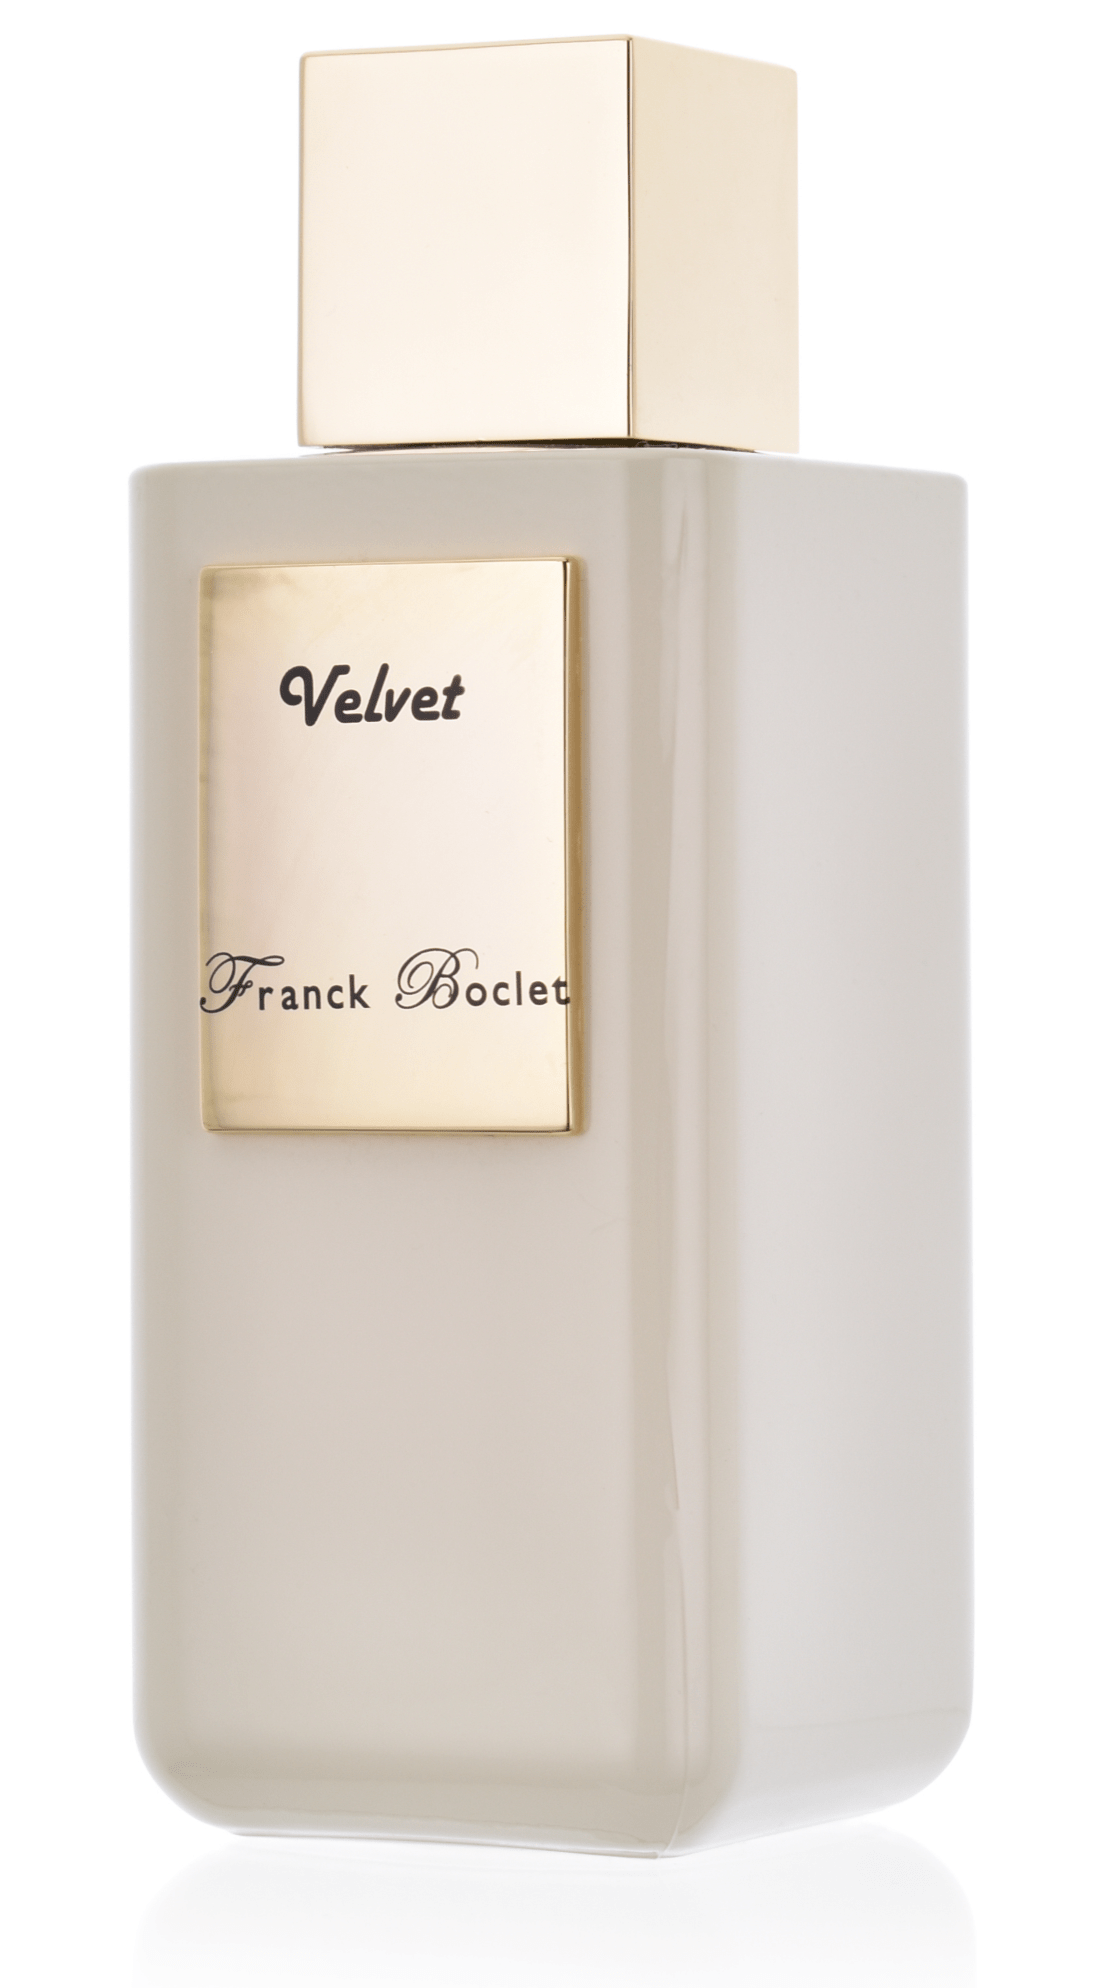 Franck Boclet Velvet 5 ml Extrait de Parfum Abfüllung 